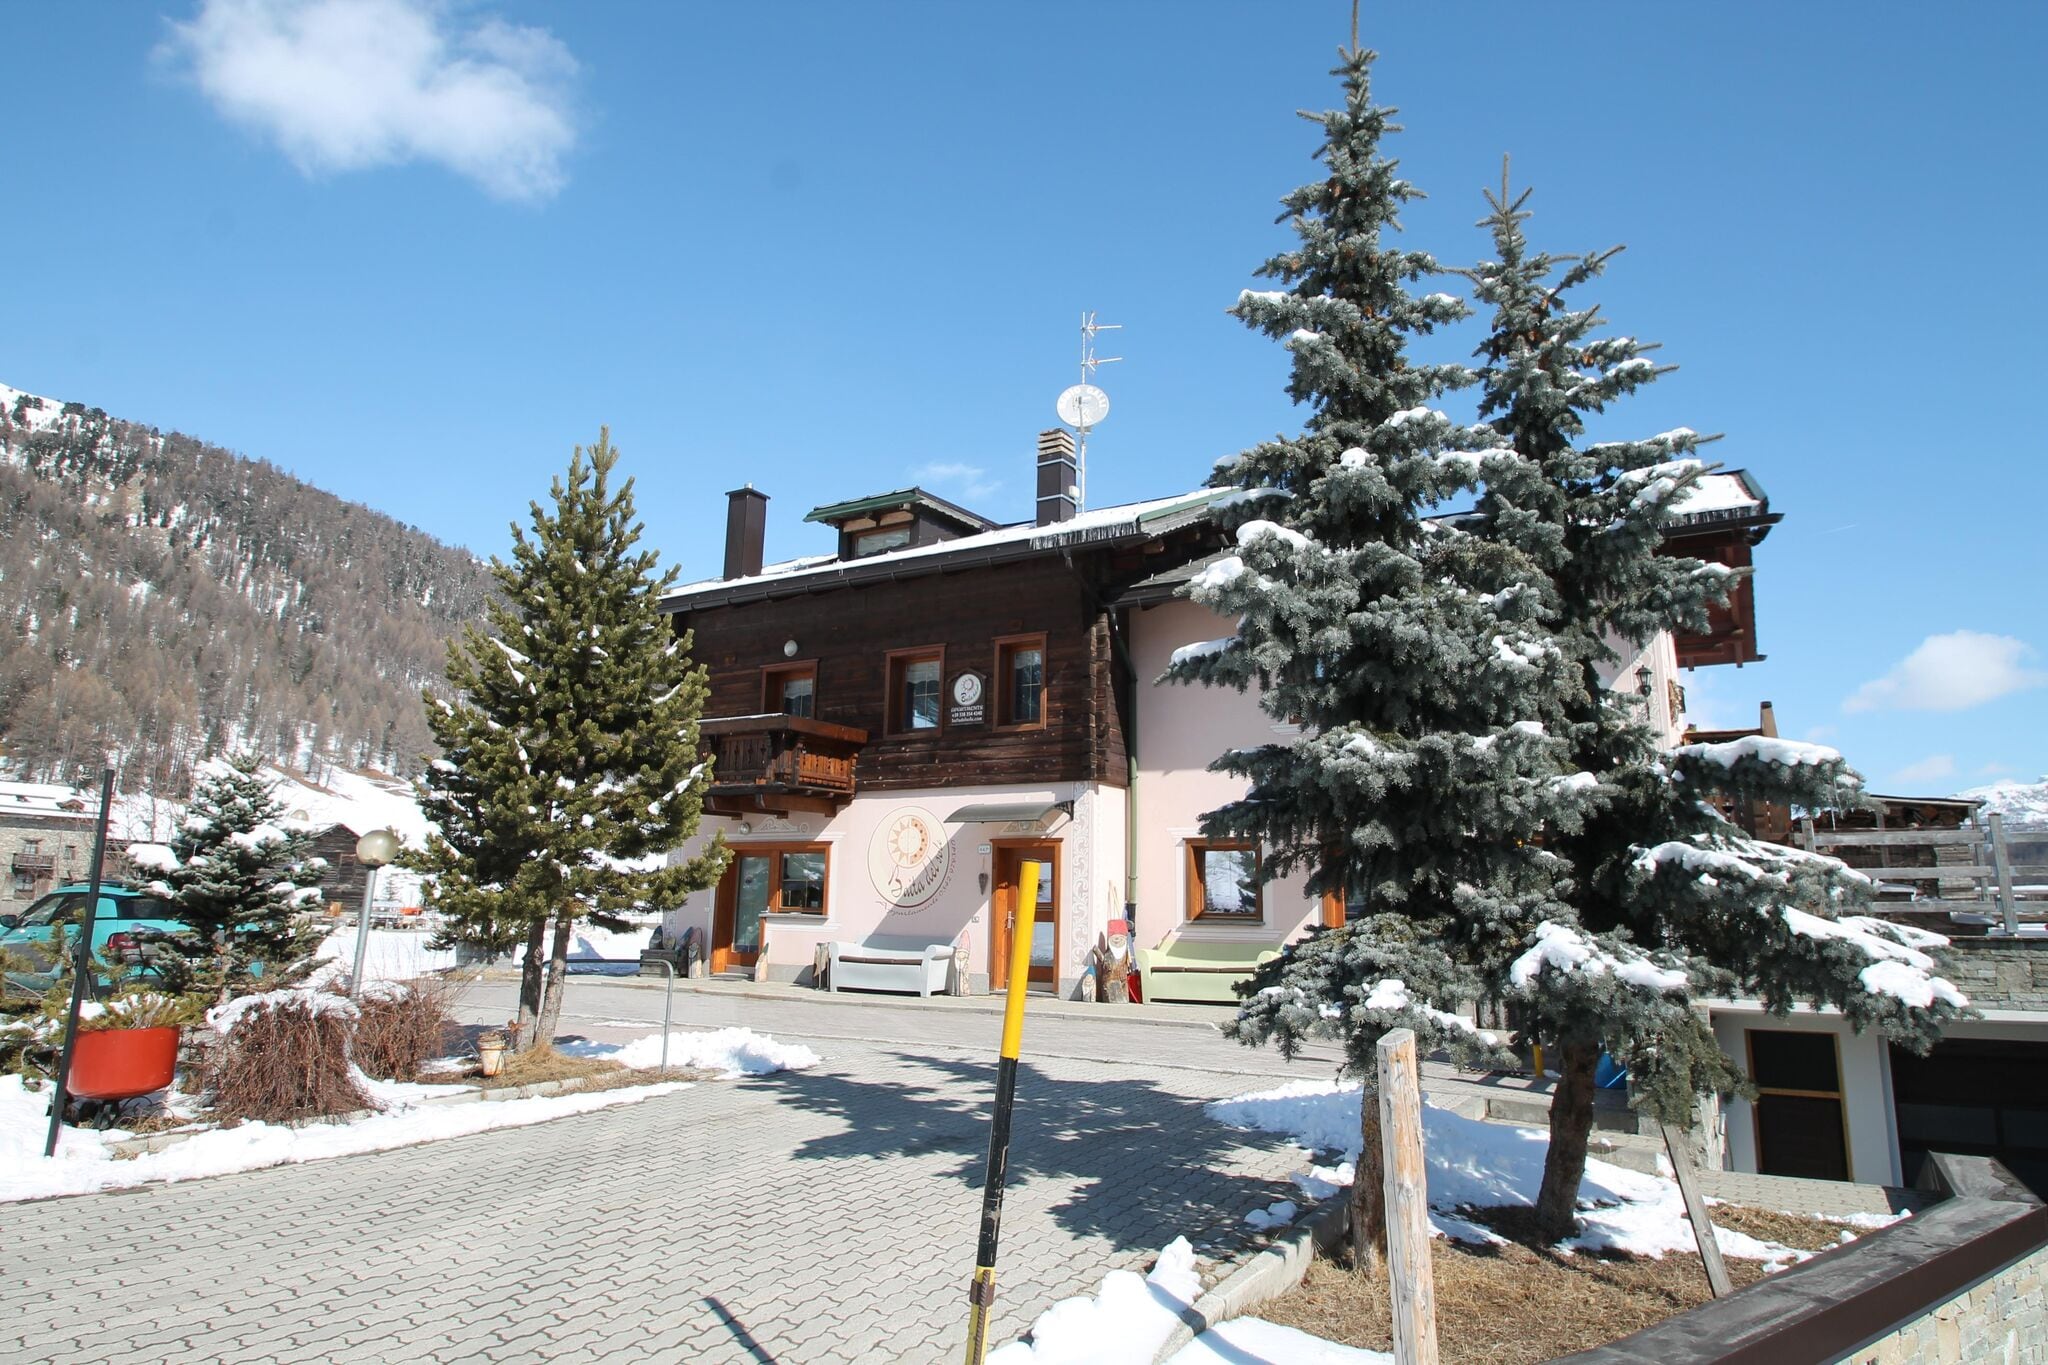 Appartement in Livigno, vlakbij het skigebied